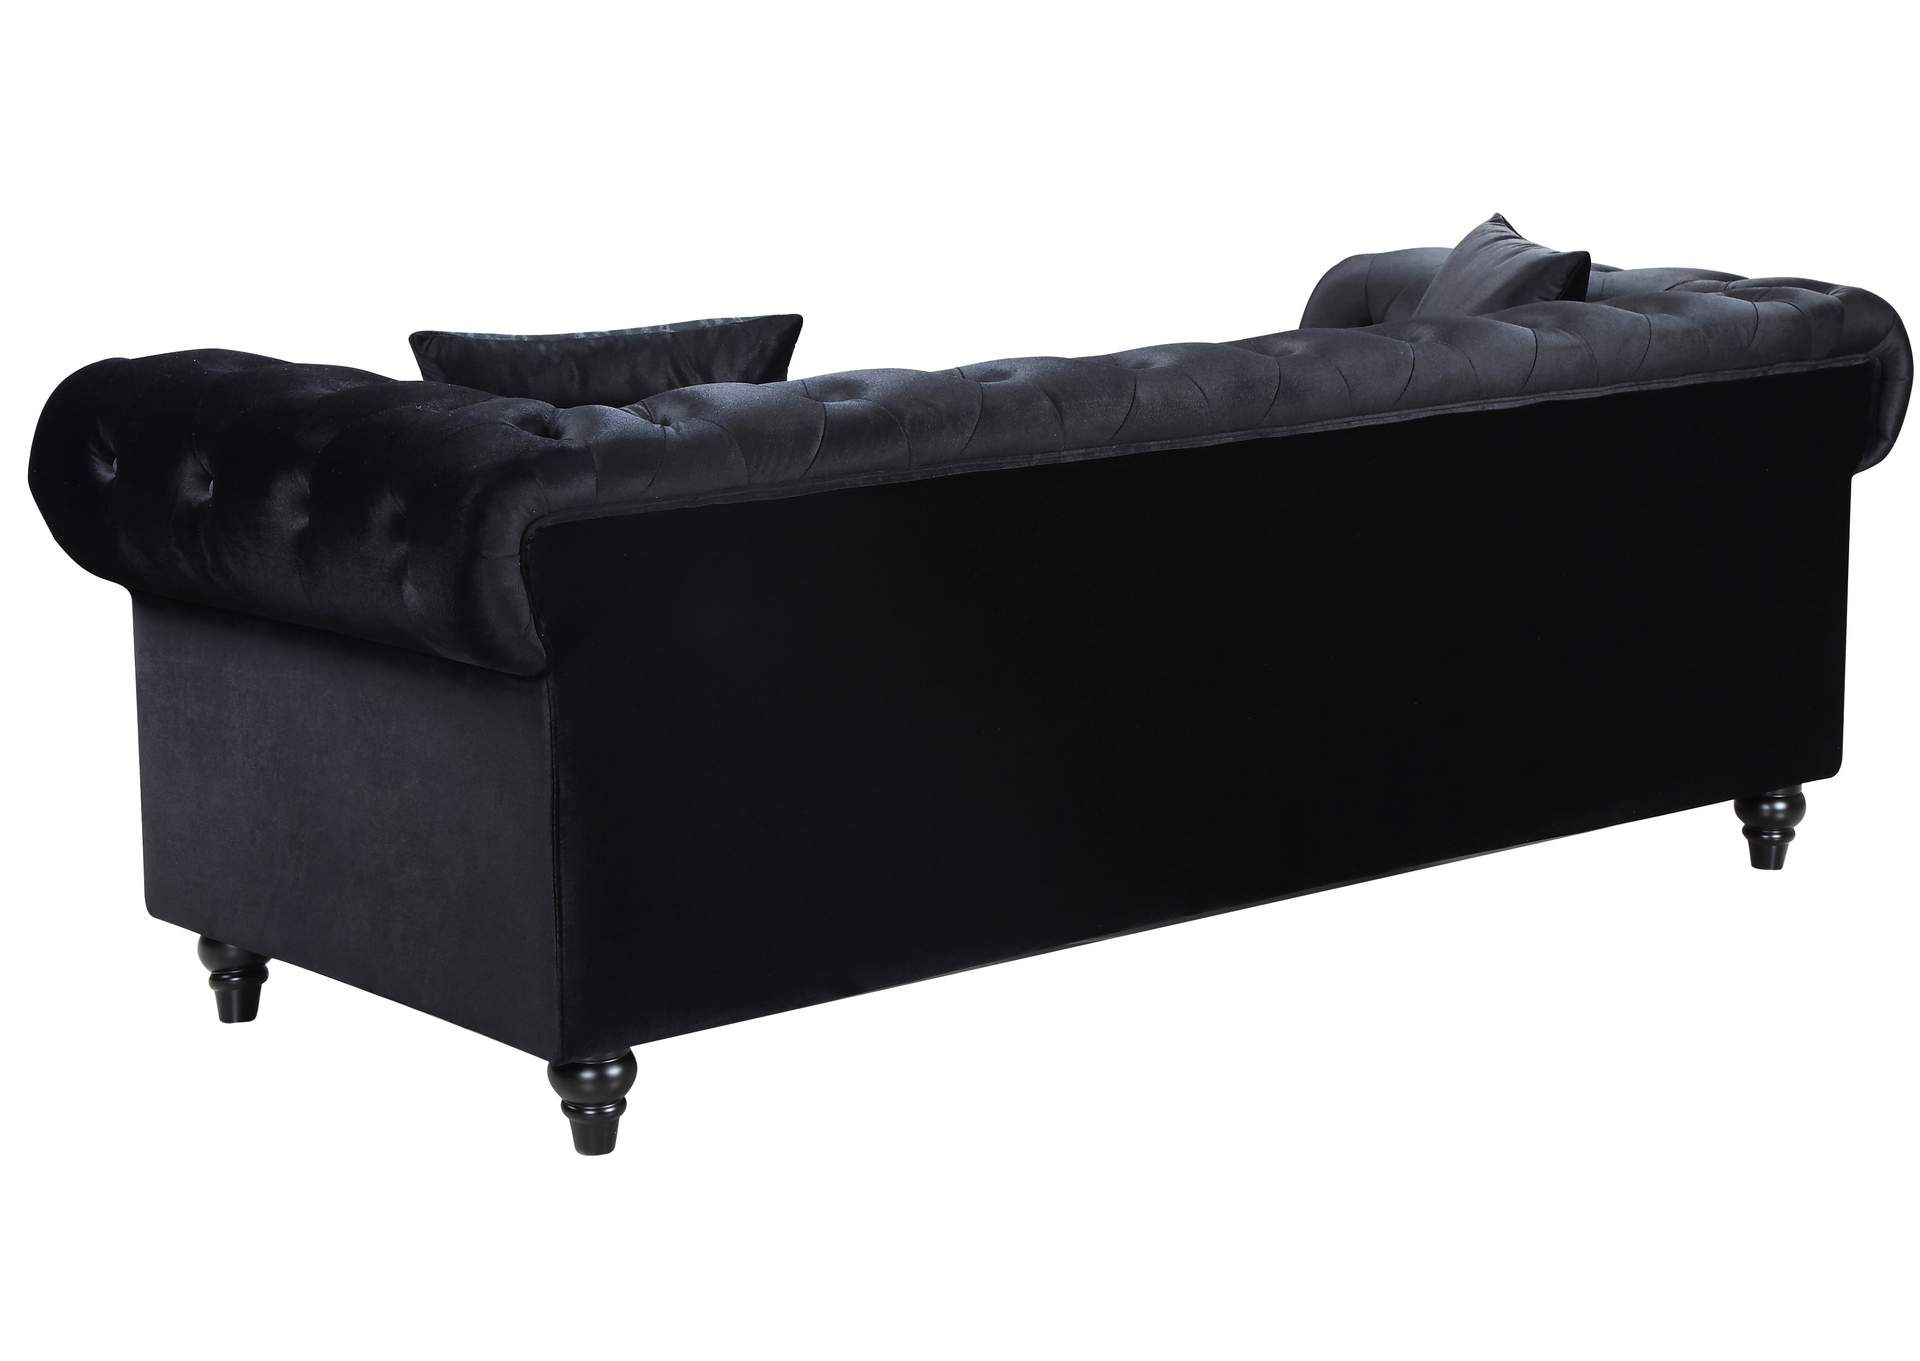 Chesterfield Black Velvet Sofa Best Buy Furniture And Mattress For Black Velvet Sofas (View 15 of 20)